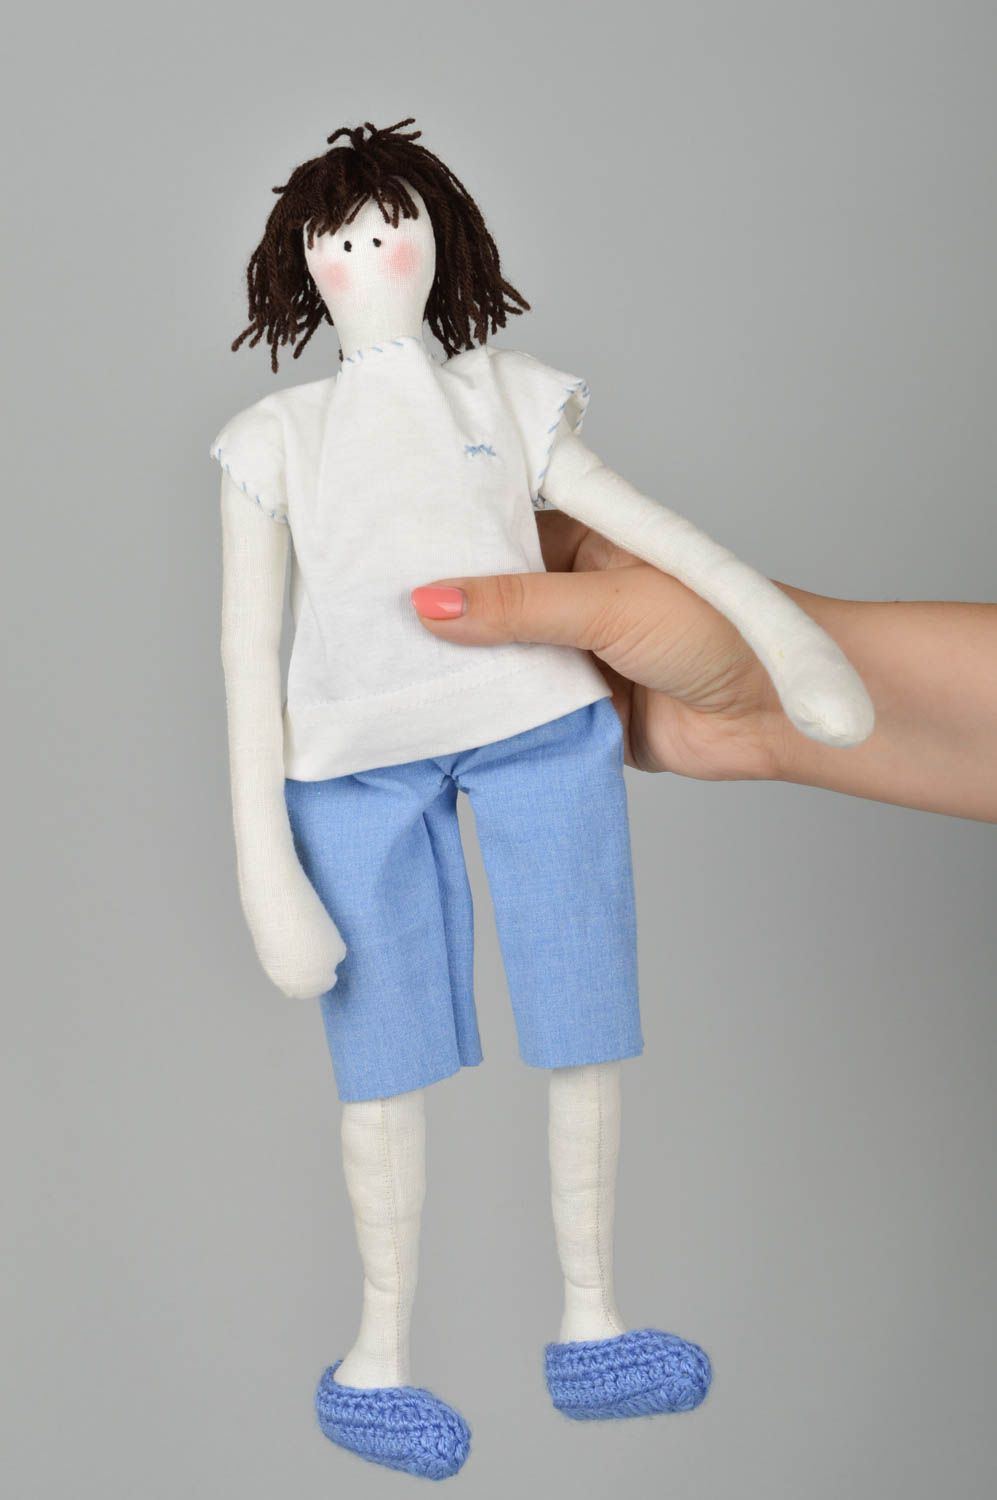 Handmade doll designer doll for girls unusual gift for baby nursery decor photo 1